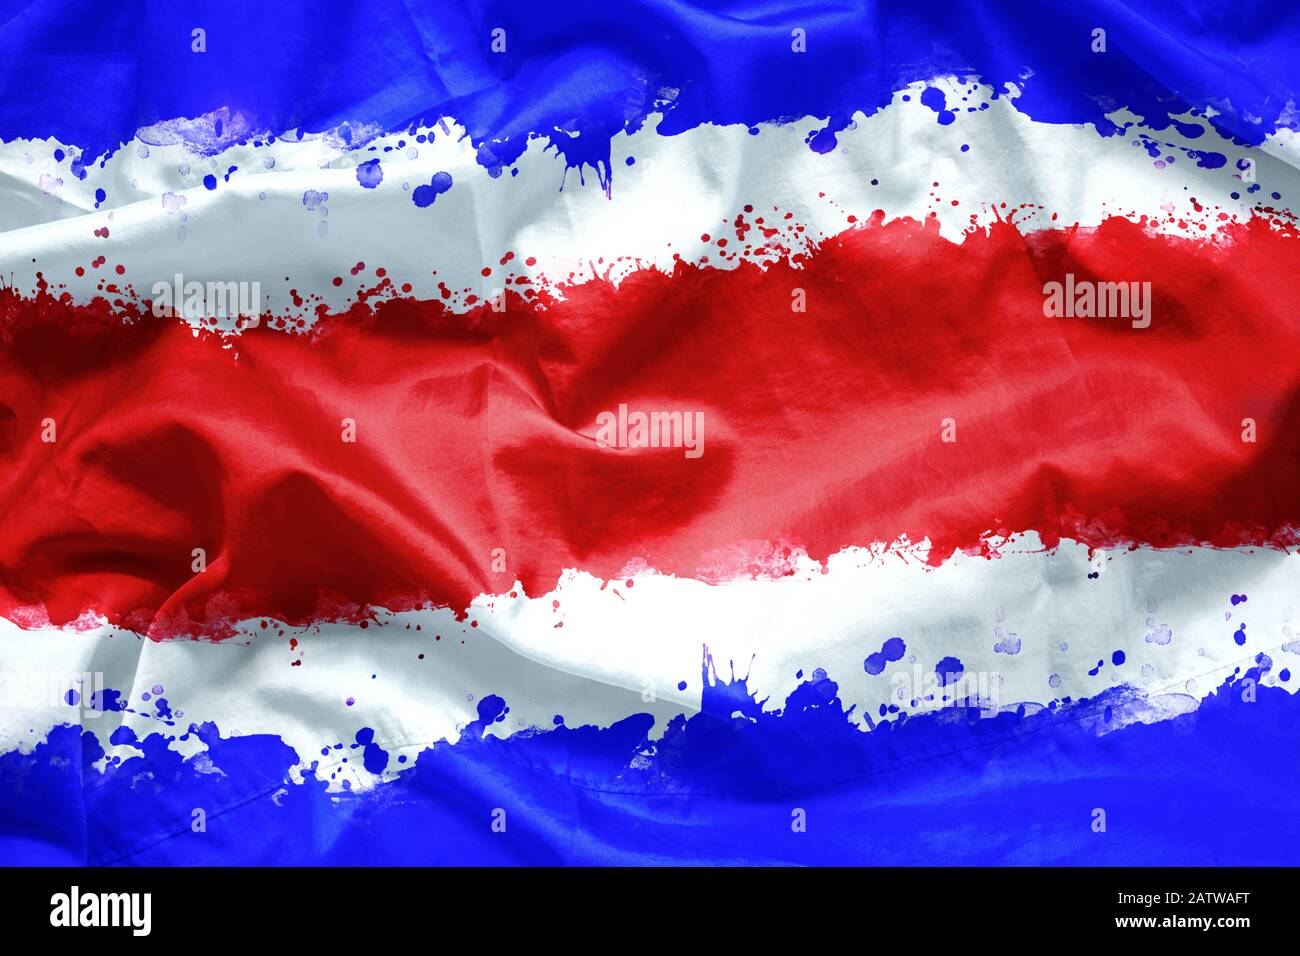 Bandera República de Costa Rica por pincel de pintura acuarela sobre tela de lienzo, estilo grunge Foto de stock